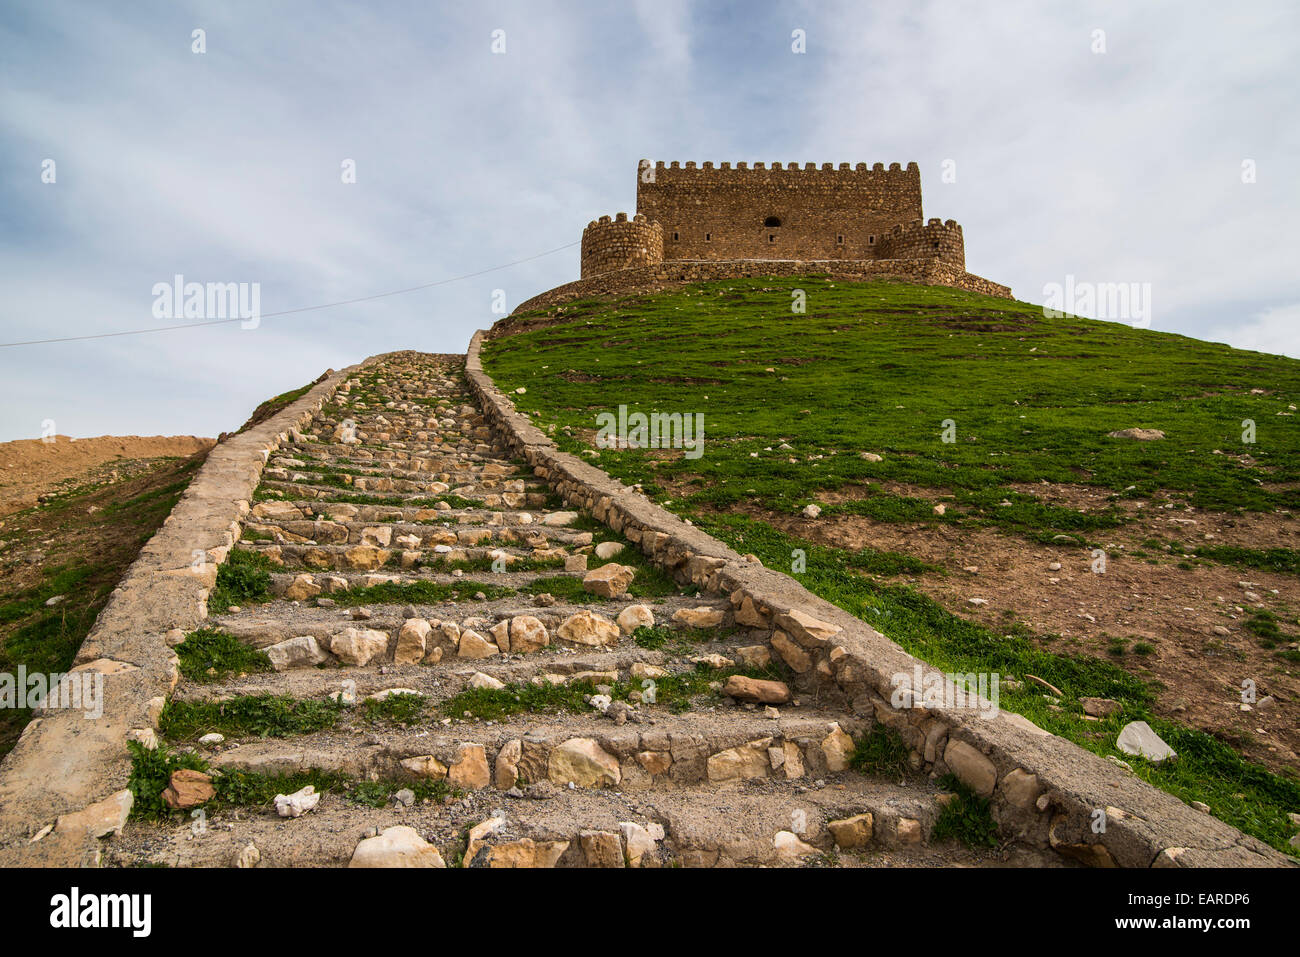 Ruvido scalinata che conduce al castello di Khanzad, Khanzad, Provincia di Arbil, Kurdistan iracheno, Iraq Foto Stock